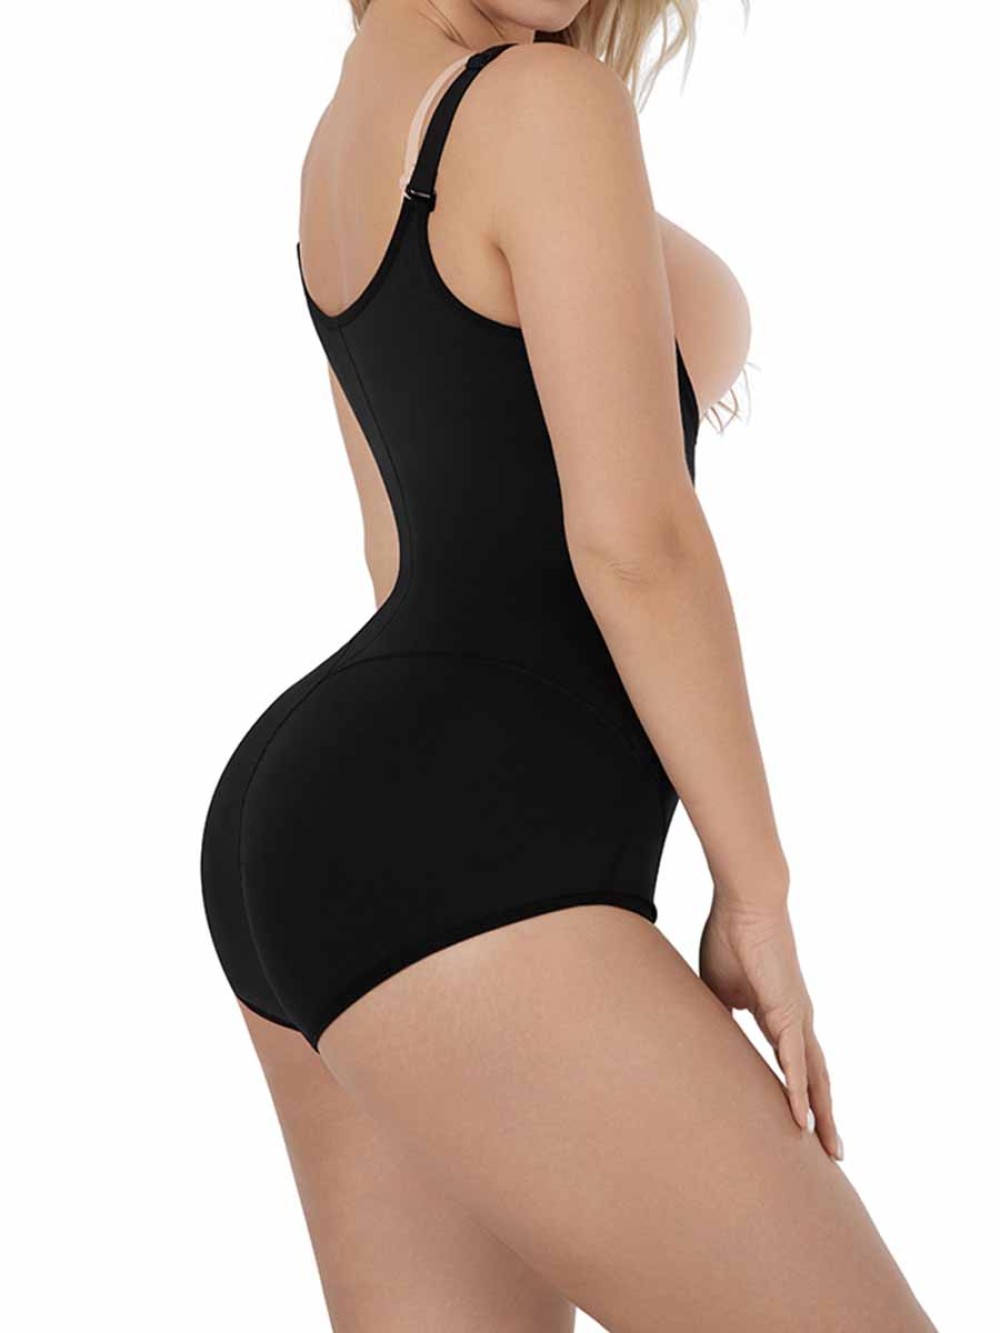 Lady Shapewear Bodysuit Adjust Hooks And Zipper Women Tummy Control Body Shaper Underwear